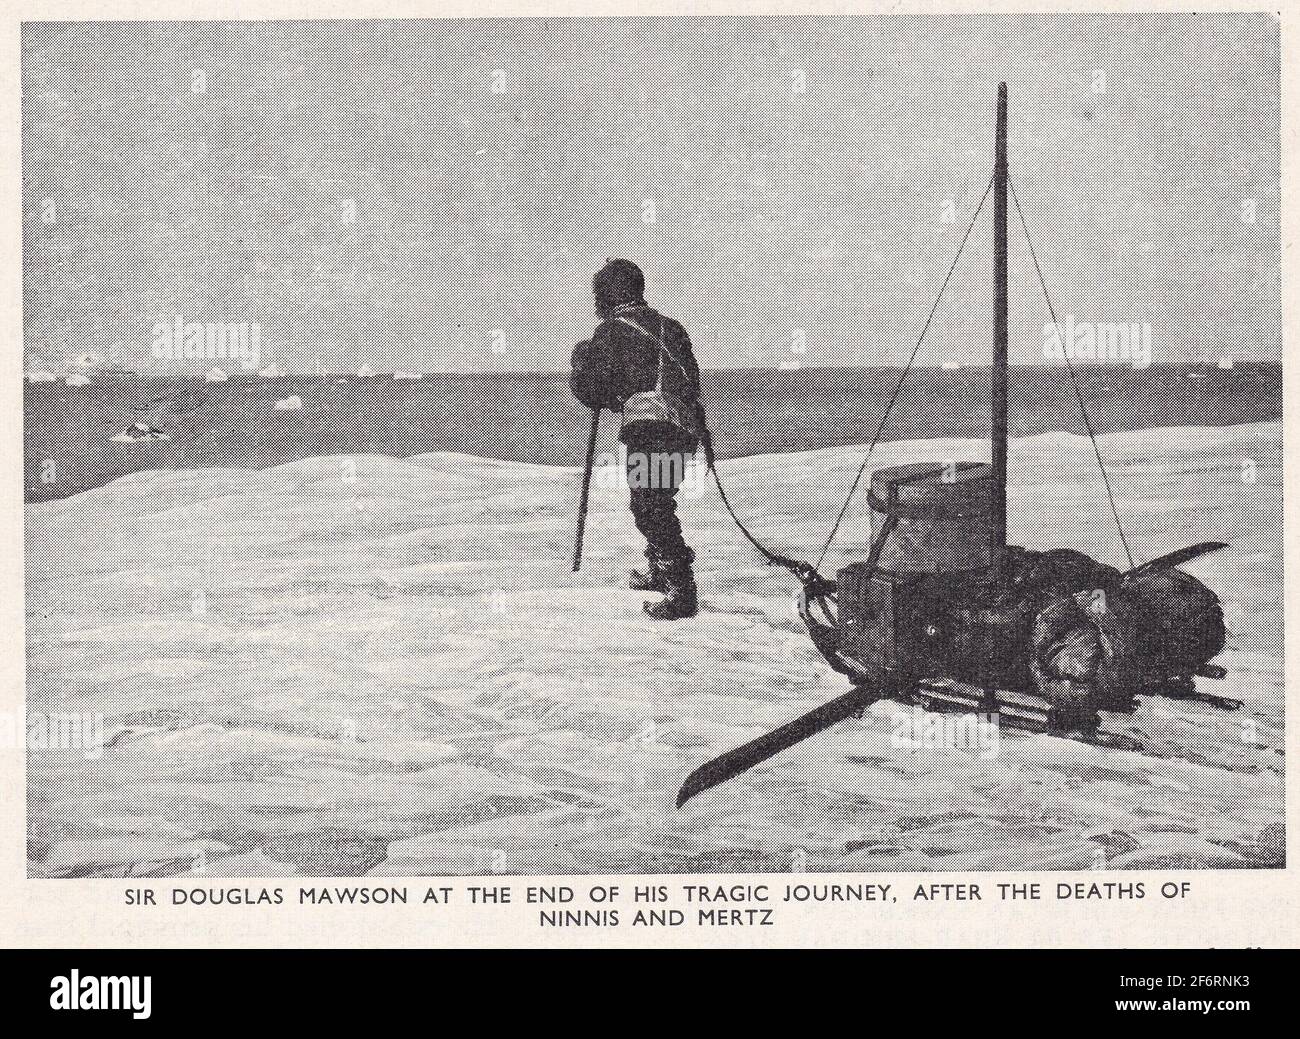 Südpol, Antarktis - Vintage Schwarz-Weiß-Fotos - Sir Douglas Mawson am Ende seiner tragischen Reise, nach dem Tod von Ninnis und Mertz. Stockfoto